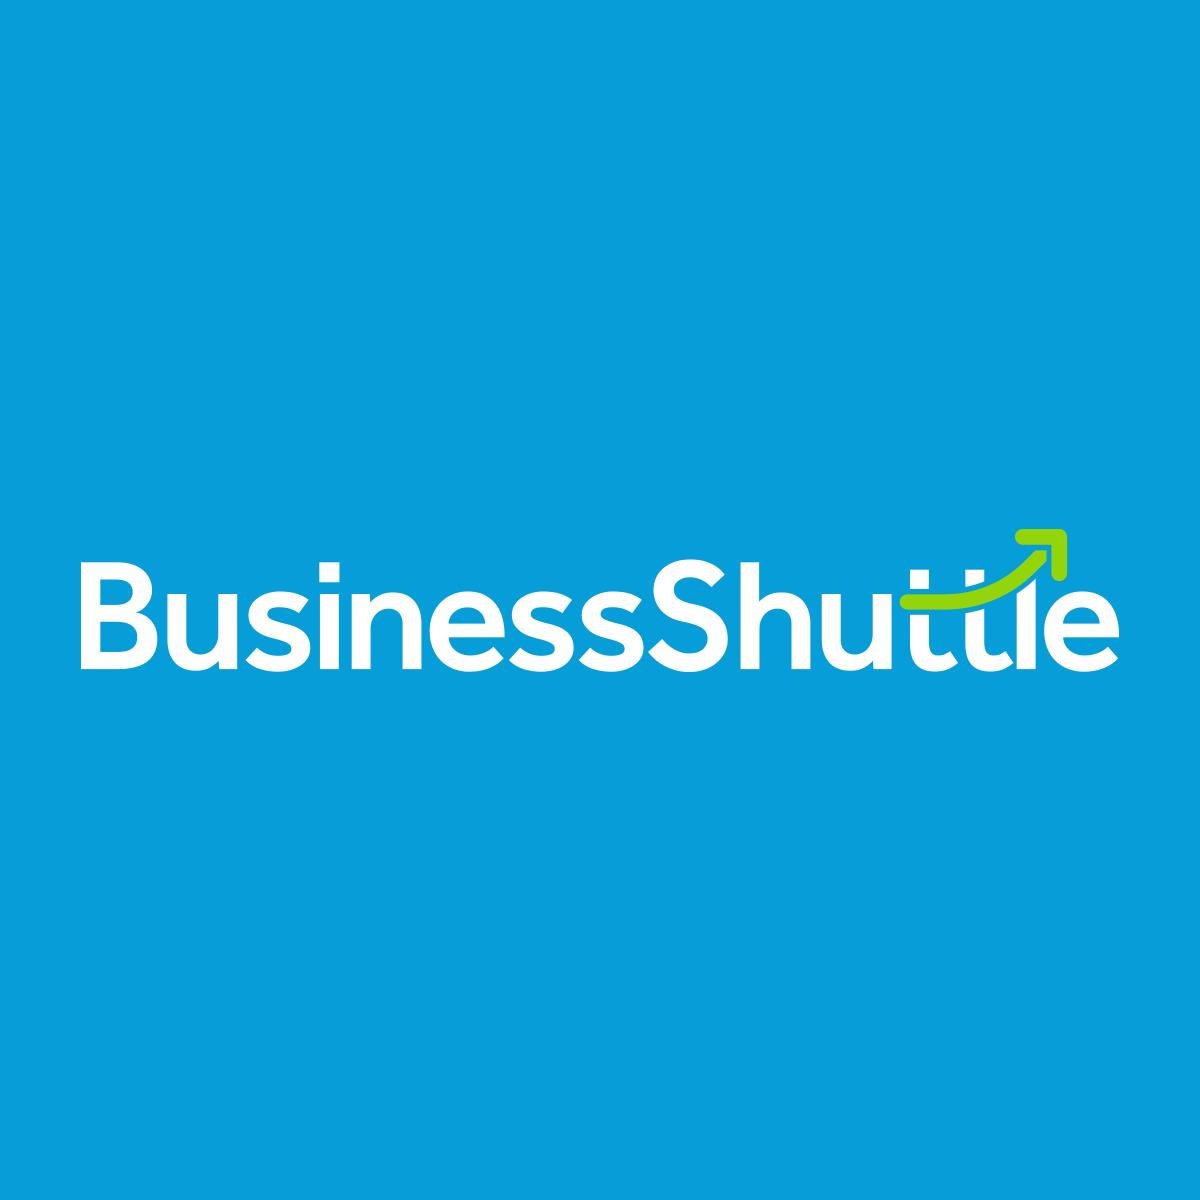 Business Shuttle